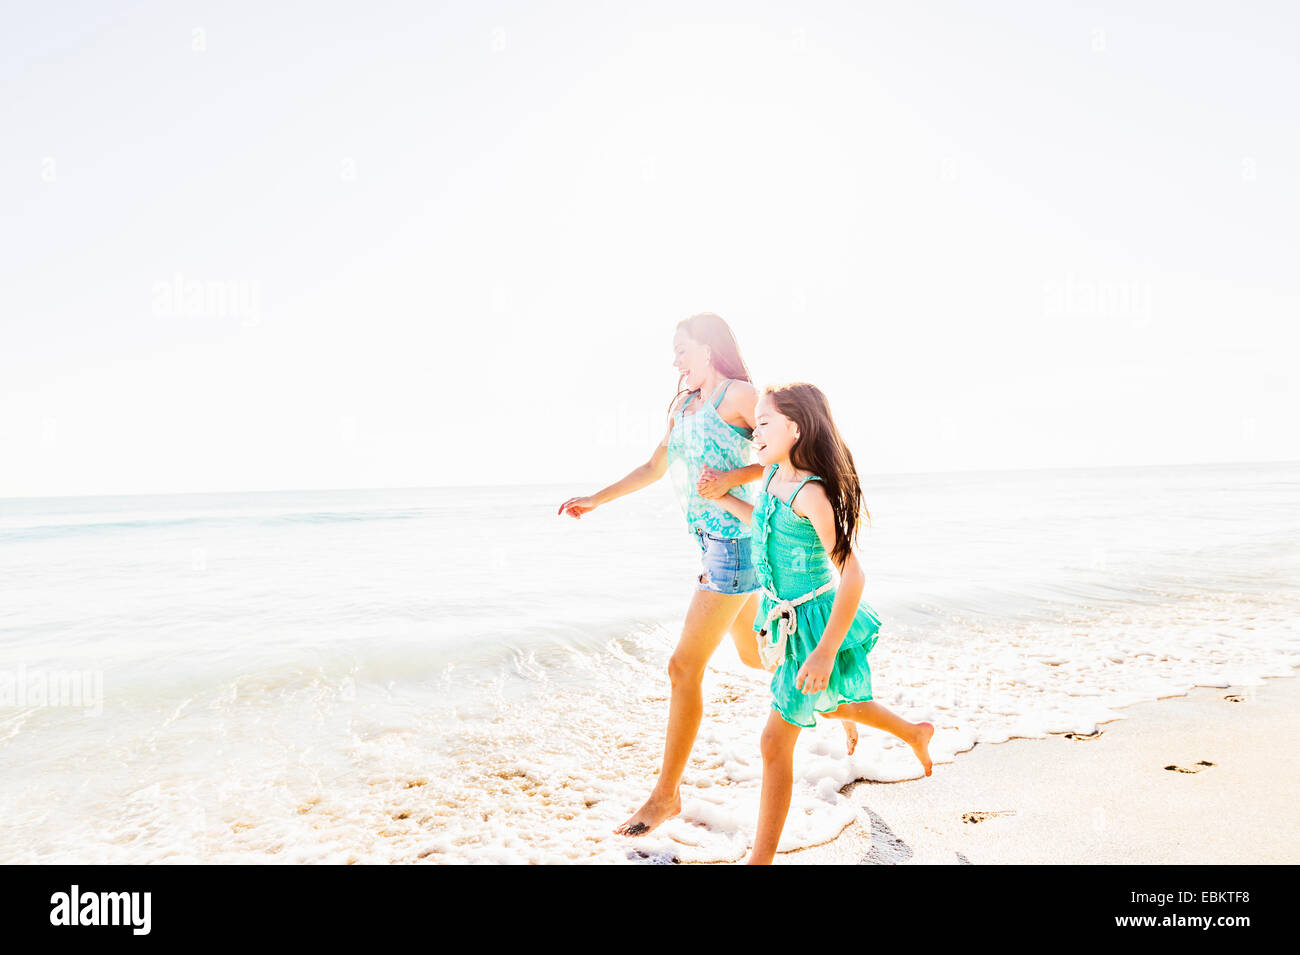 USA, Floride, Jupiter, Mère et fille (6-7) de passer du temps ensemble on beach Banque D'Images